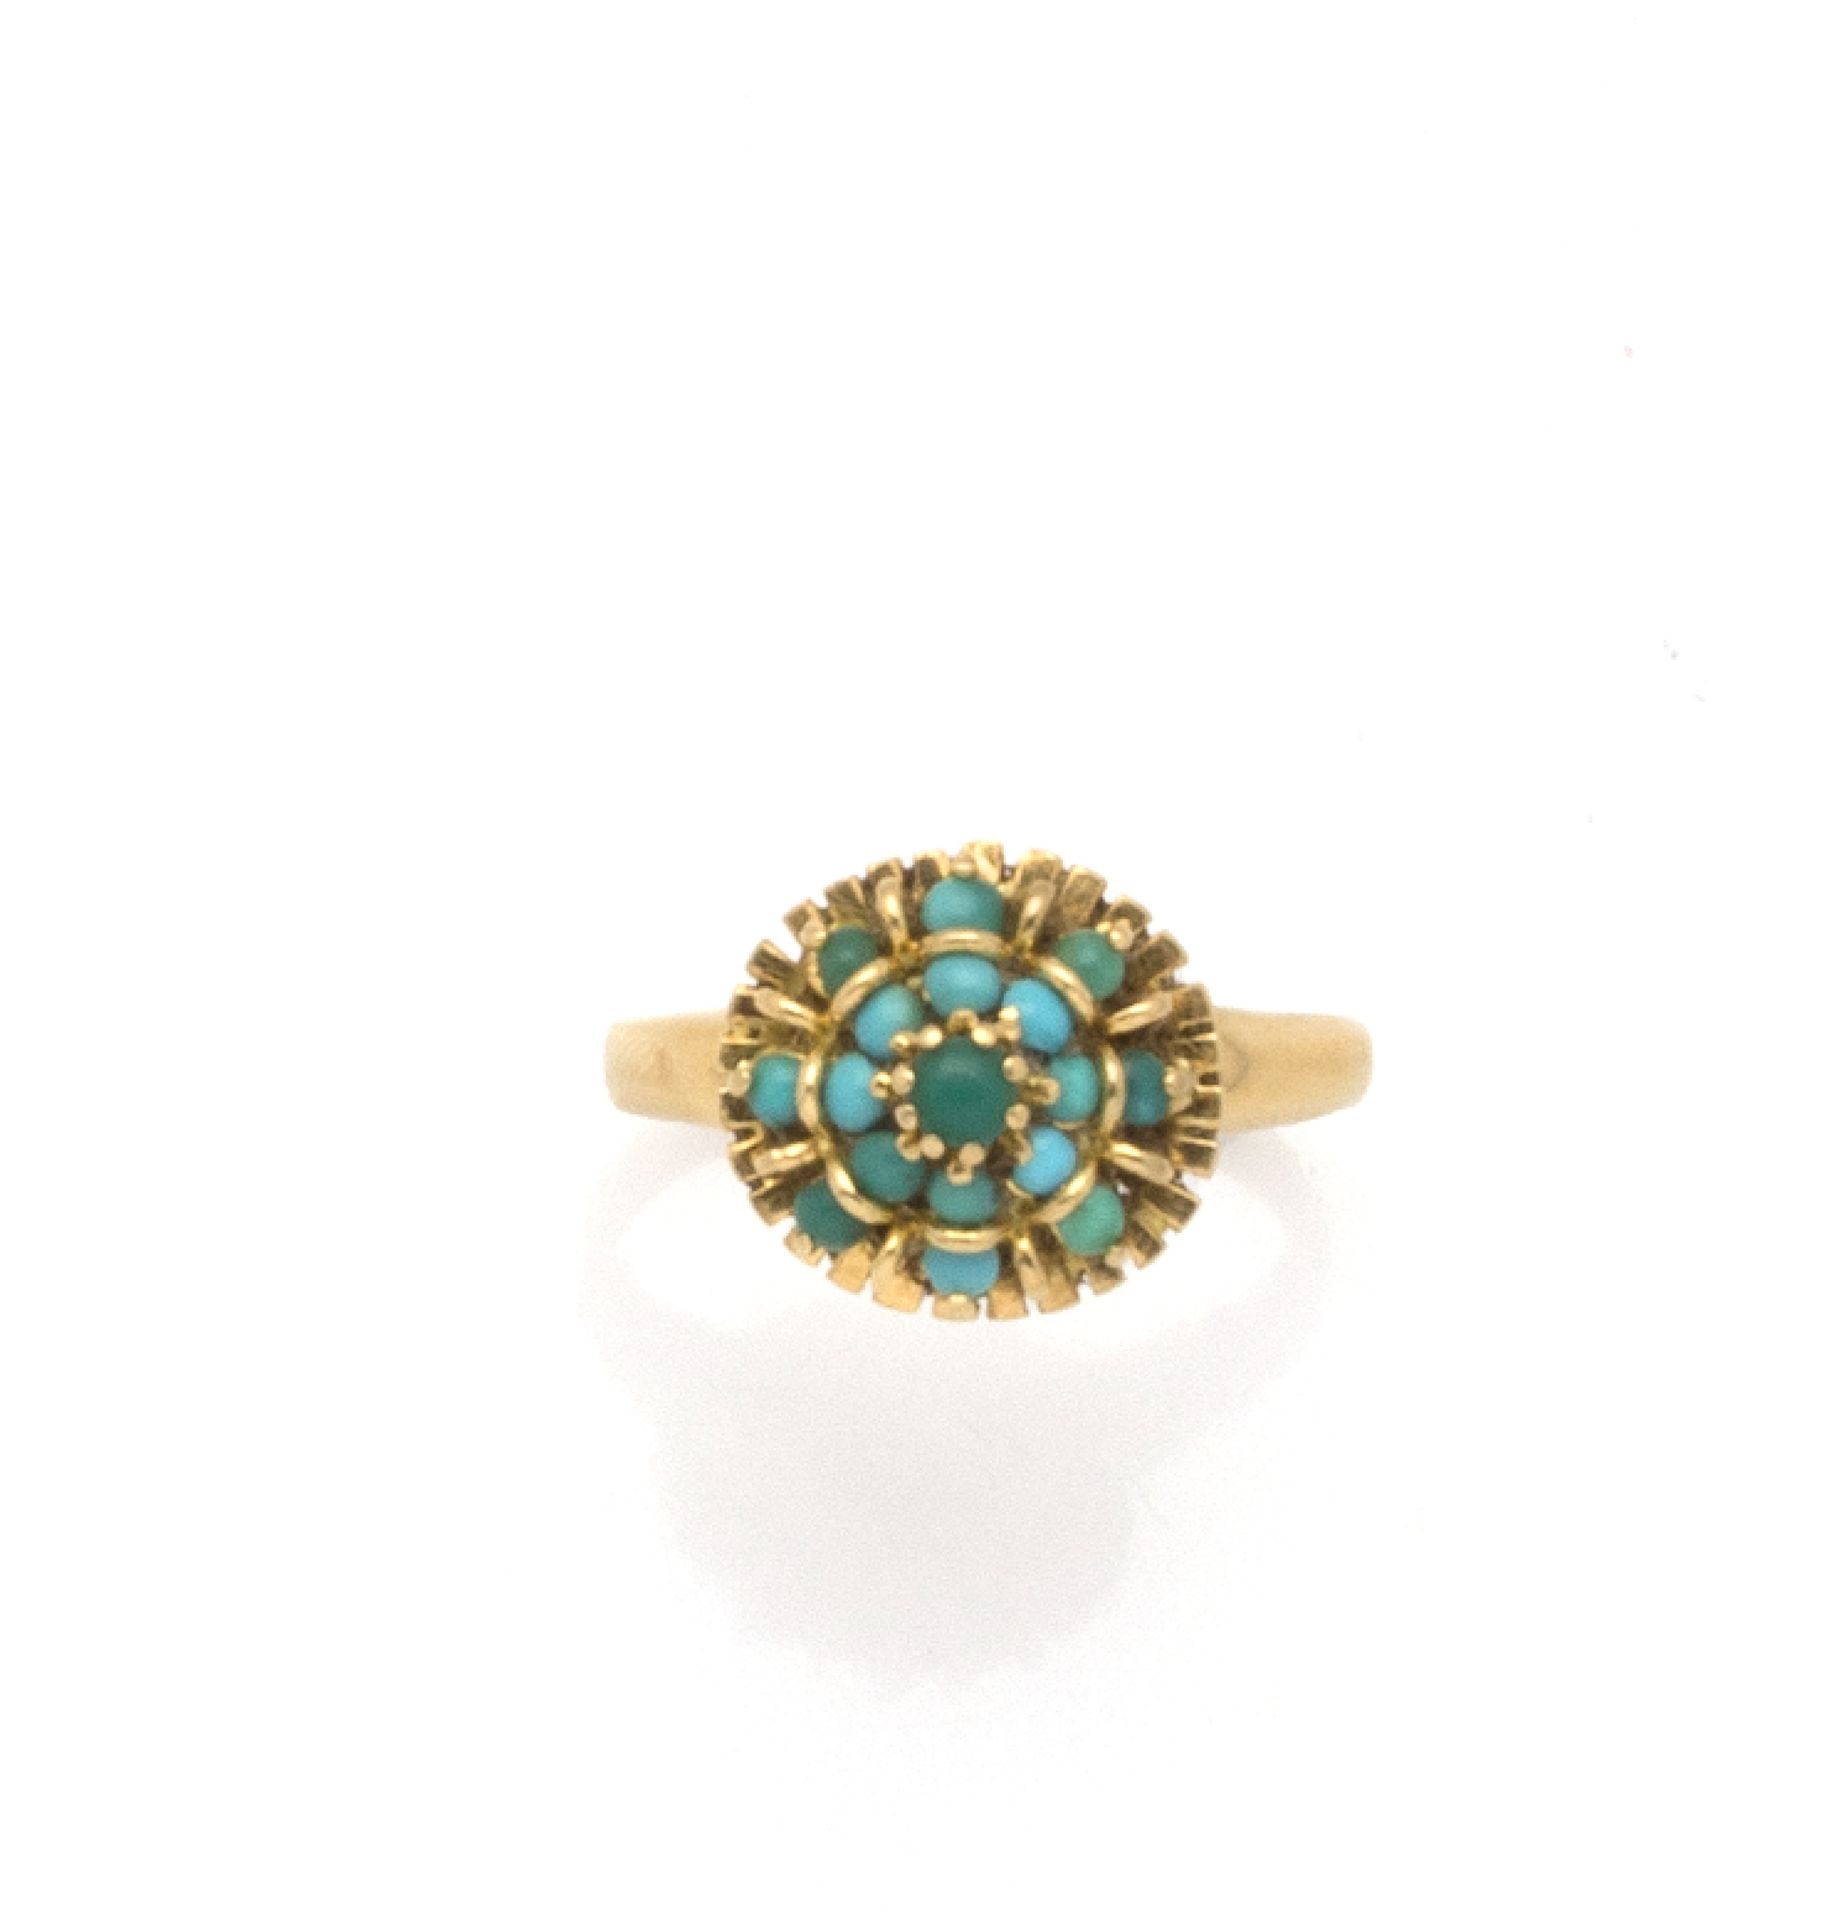 Null 18K（750/1000）黄金雏菊戒指，17颗绿松石珍珠镶嵌在光芒四射的表圈中。

手指大小：56 - 毛重：4.26 g